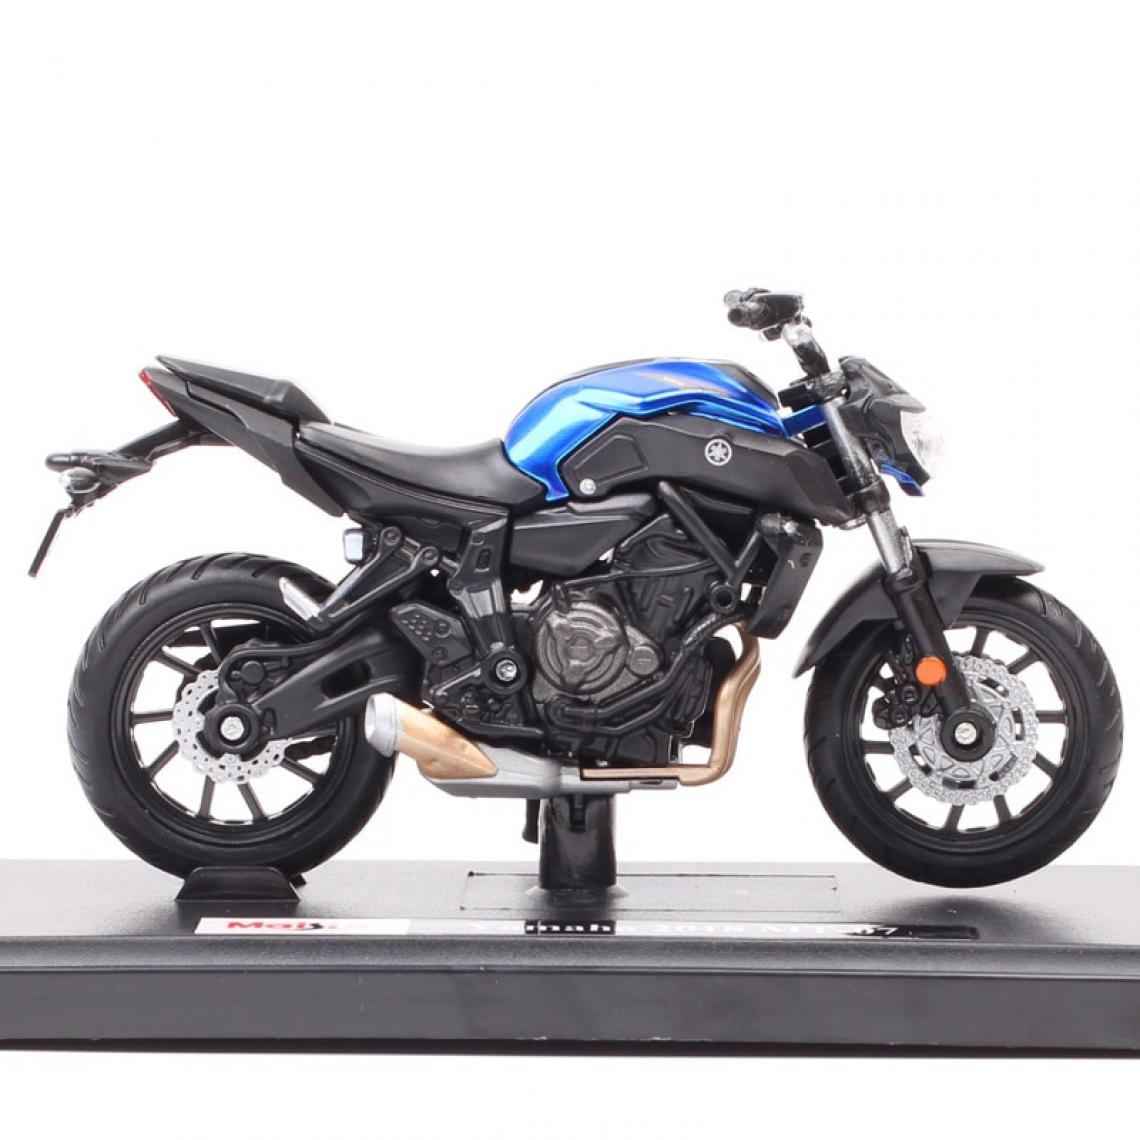 Universal - Échelle 1/18 Mercer 2018 Yamaha MT 07 Moto Voiture jouet moulée sous pression YZR M1 Bicycle YZF R1 R6 Road Star Racing Cadeau |(Bleu) - Voitures